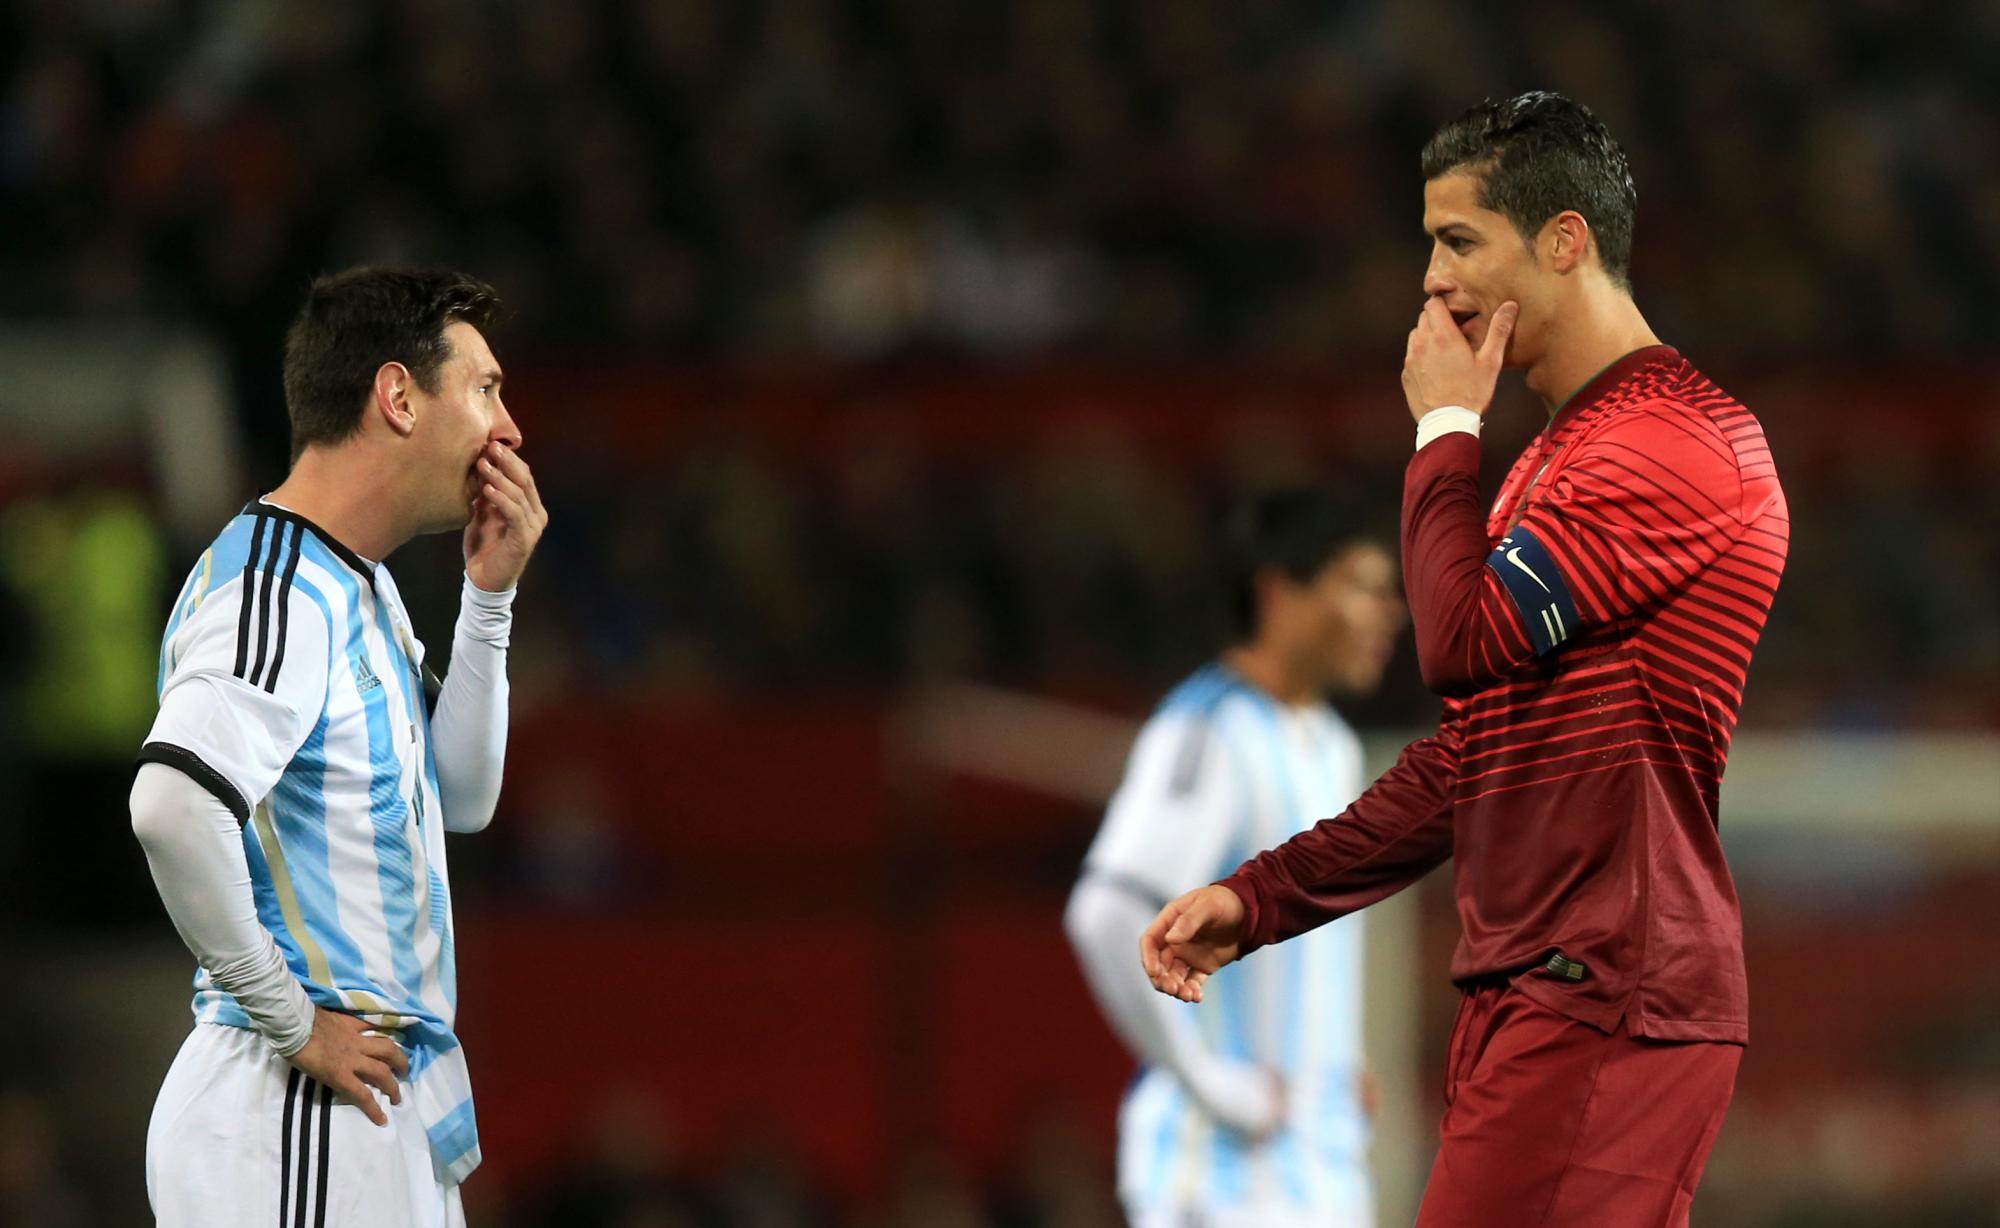 Duelo sin fin: Lionel Messi y Cristiano Ronaldo van por más récords en la Fecha FIFA. Noticias en tiempo real